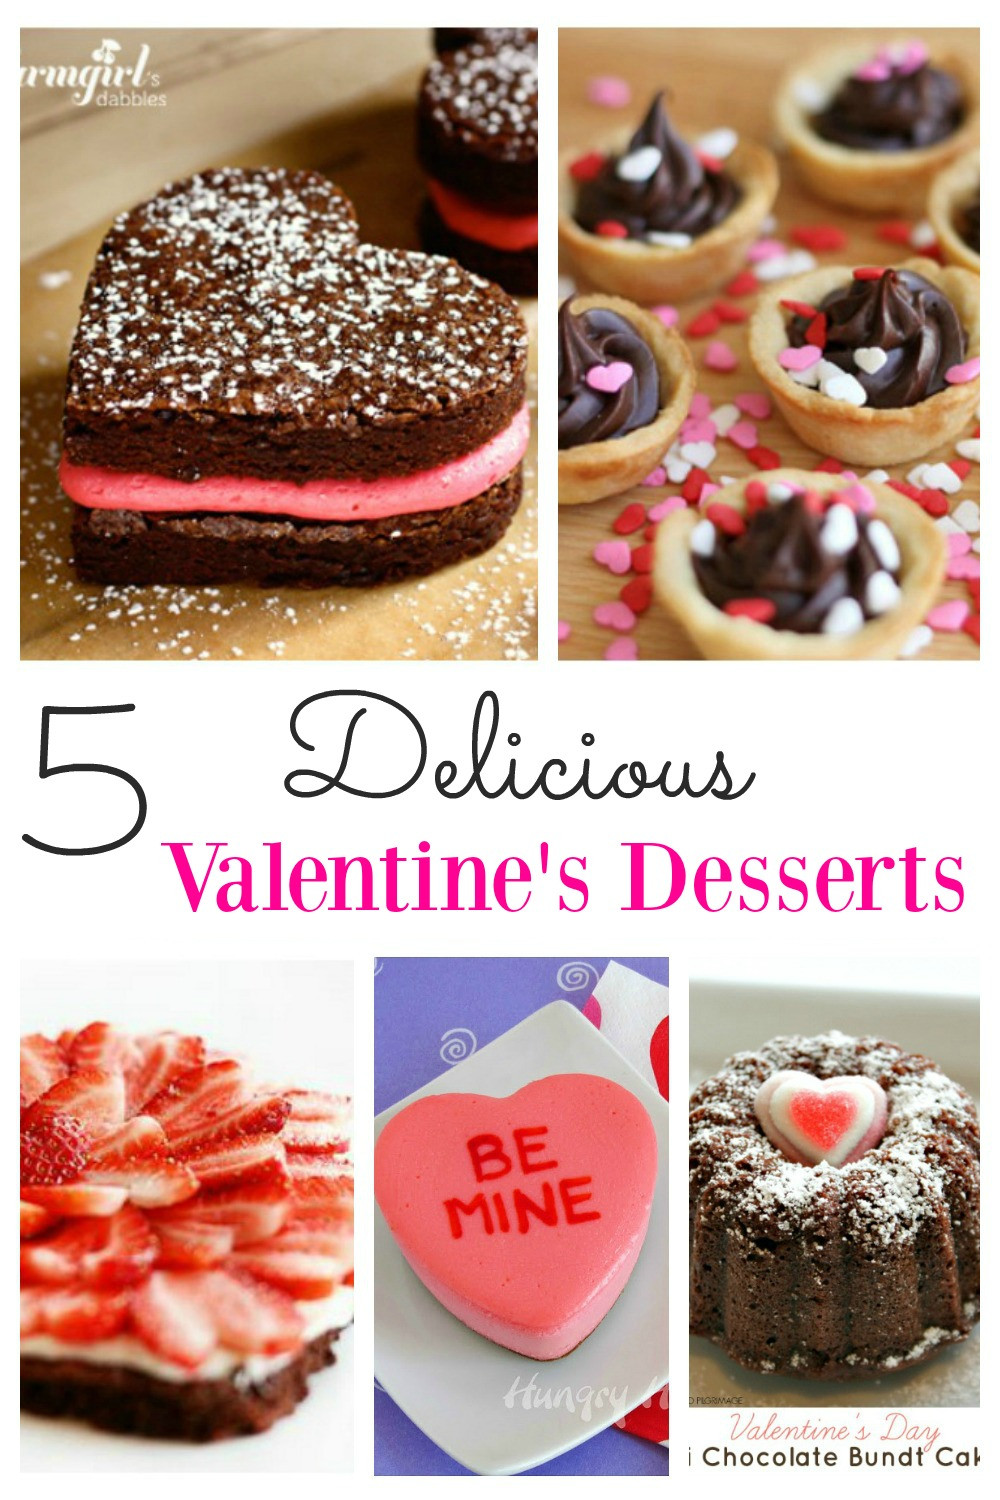 Valentine'S Day Desserts
 Delicious Valentines Desserts